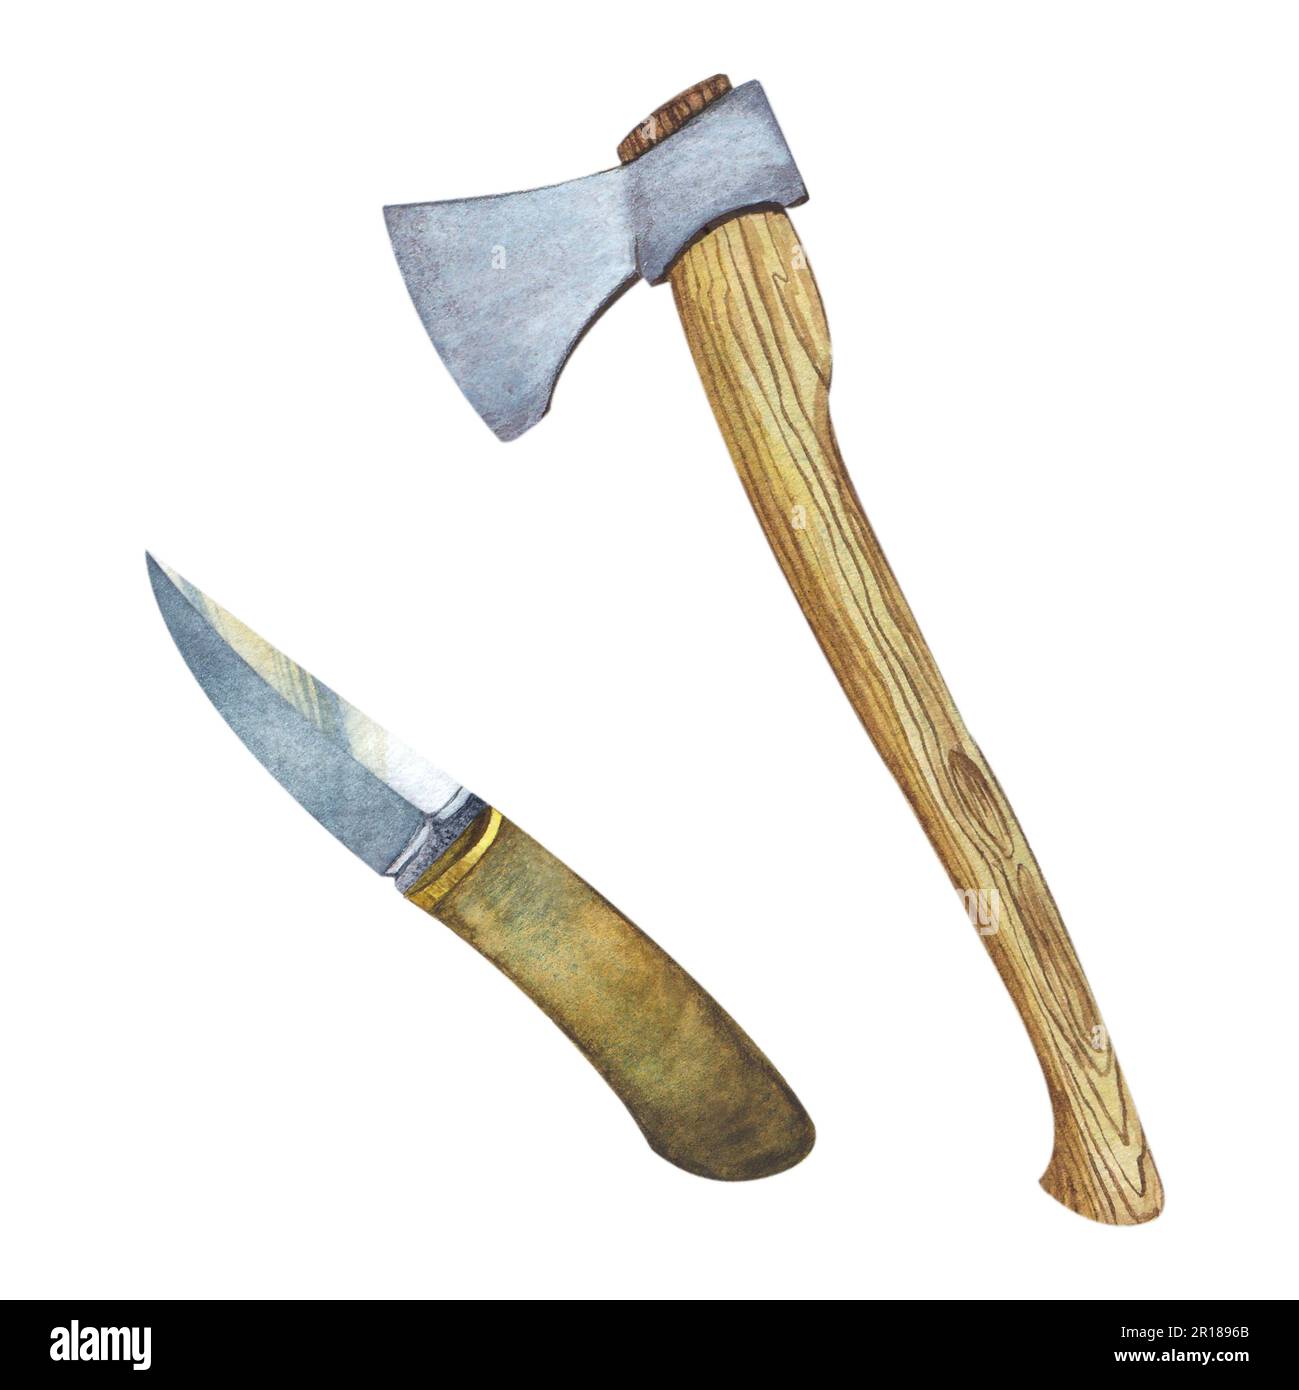 Illustration aquarelle d'une hache avec poignée en bois et d'un couteau de chasse avec poignée en bois pour camper sur fond blanc. Outil de Forester. Dessiné à la main. Banque D'Images